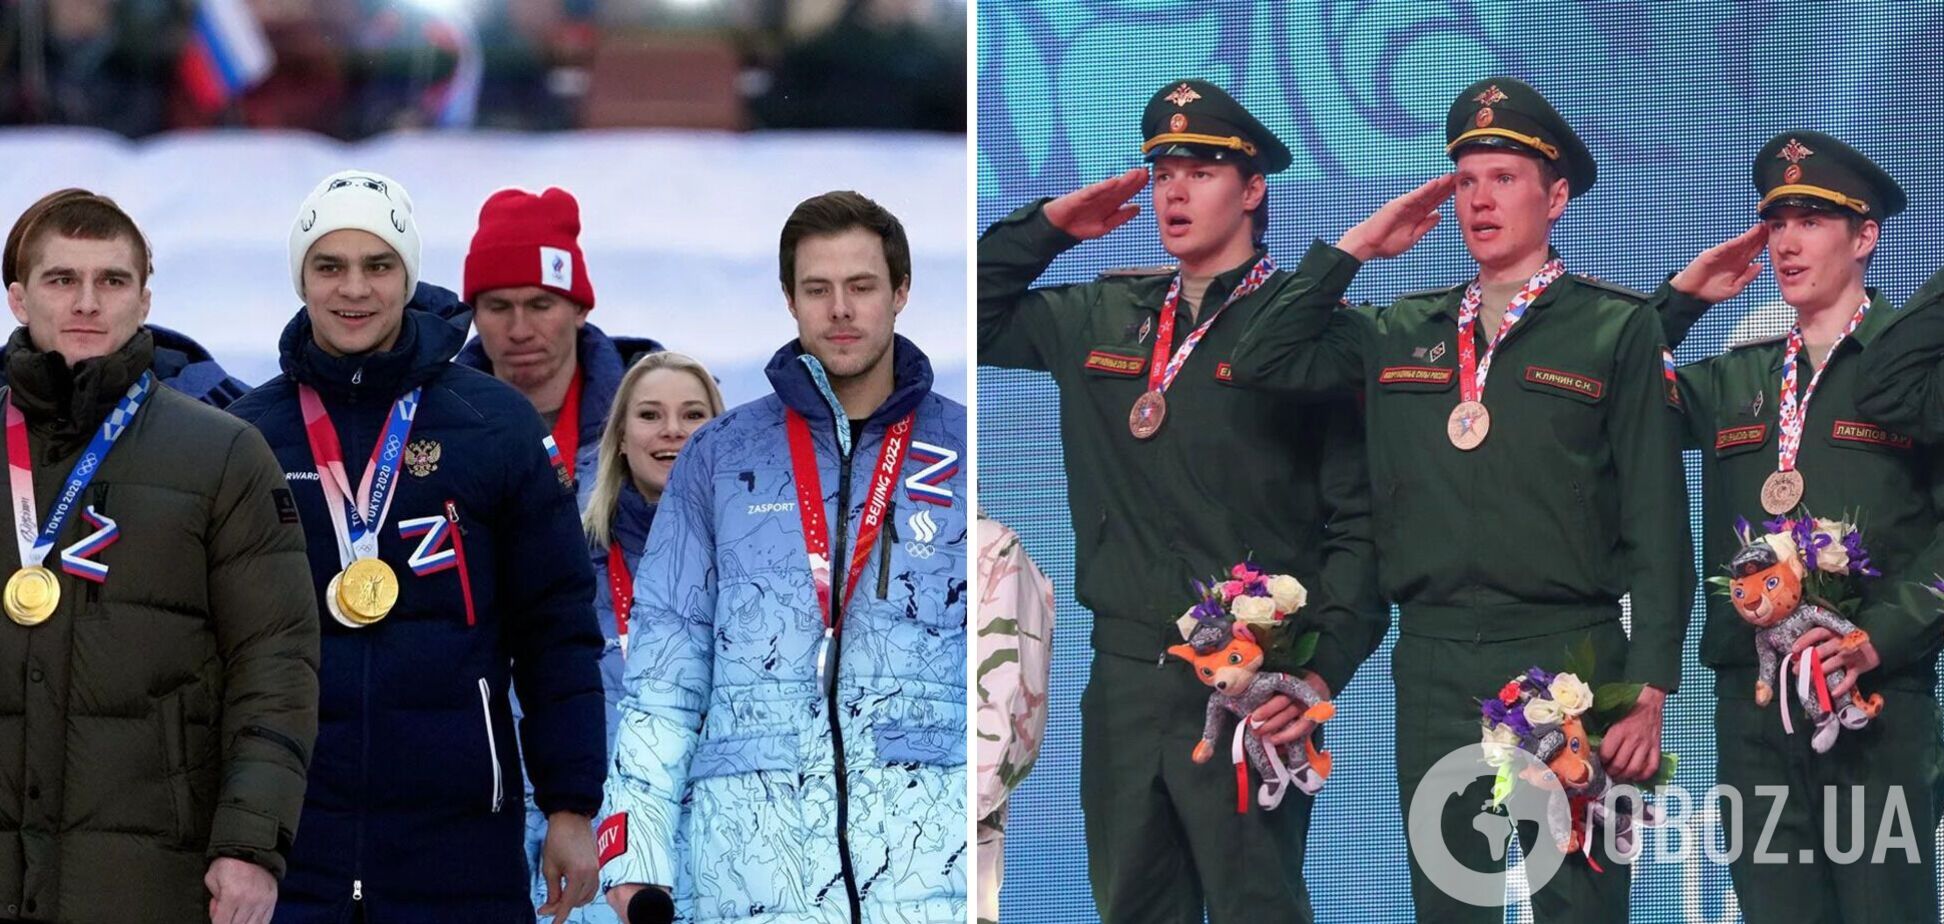 'Незаконно': российским спортсменам запретили осуждать войну в Украине